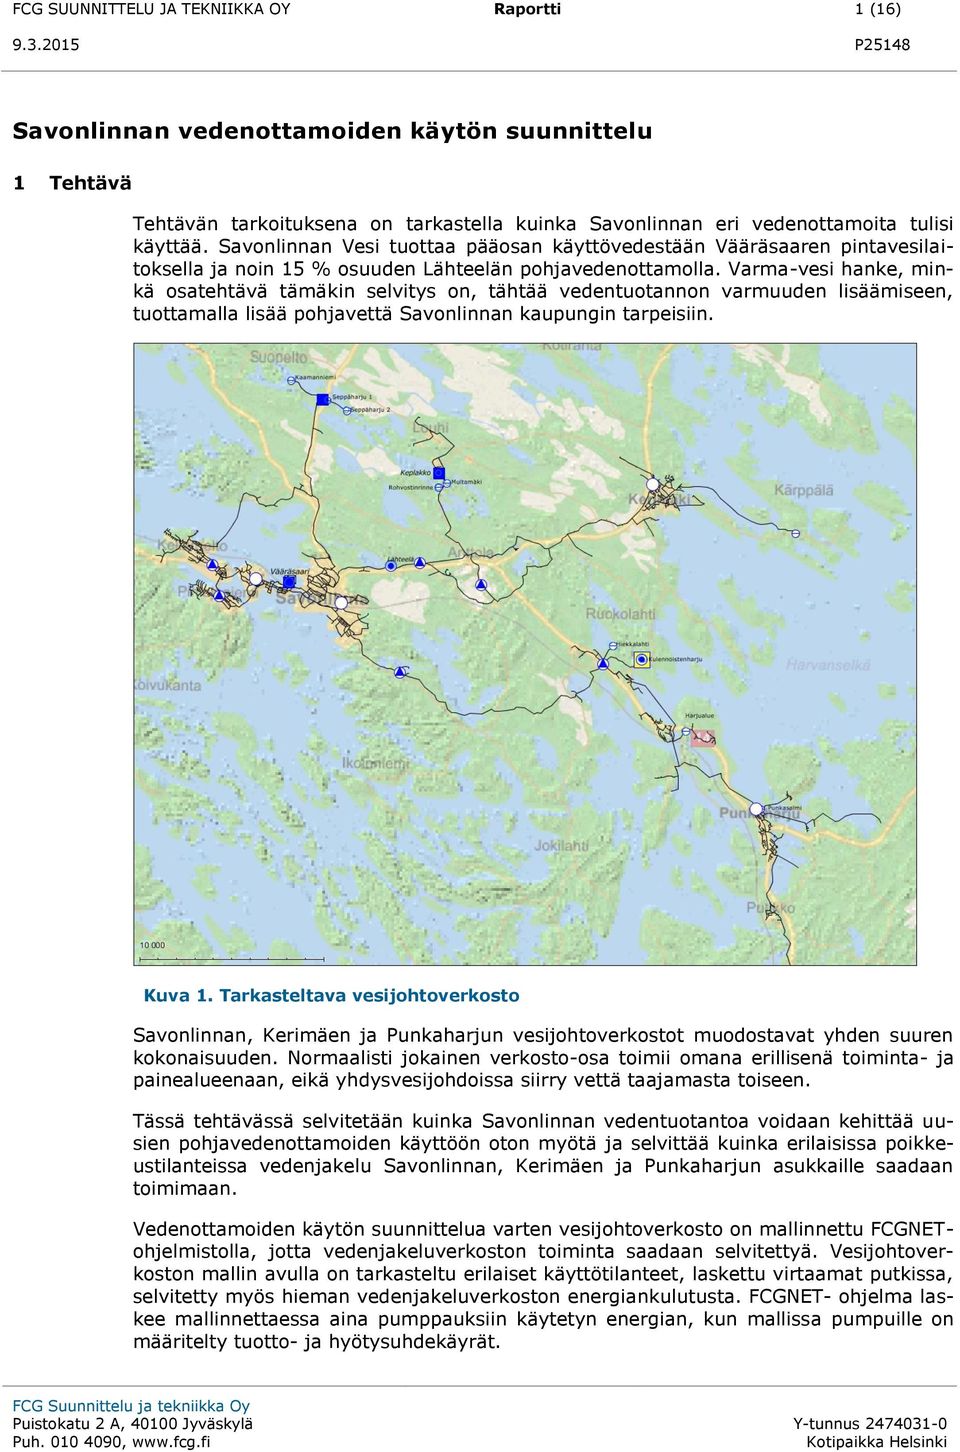 Varma-vesi hanke, minkä osatehtävä tämäkin selvitys on, tähtää vedentuotannon varmuuden lisäämiseen, tuottamalla lisää pohjavettä Savonlinnan kaupungin tarpeisiin. Kuva 1.